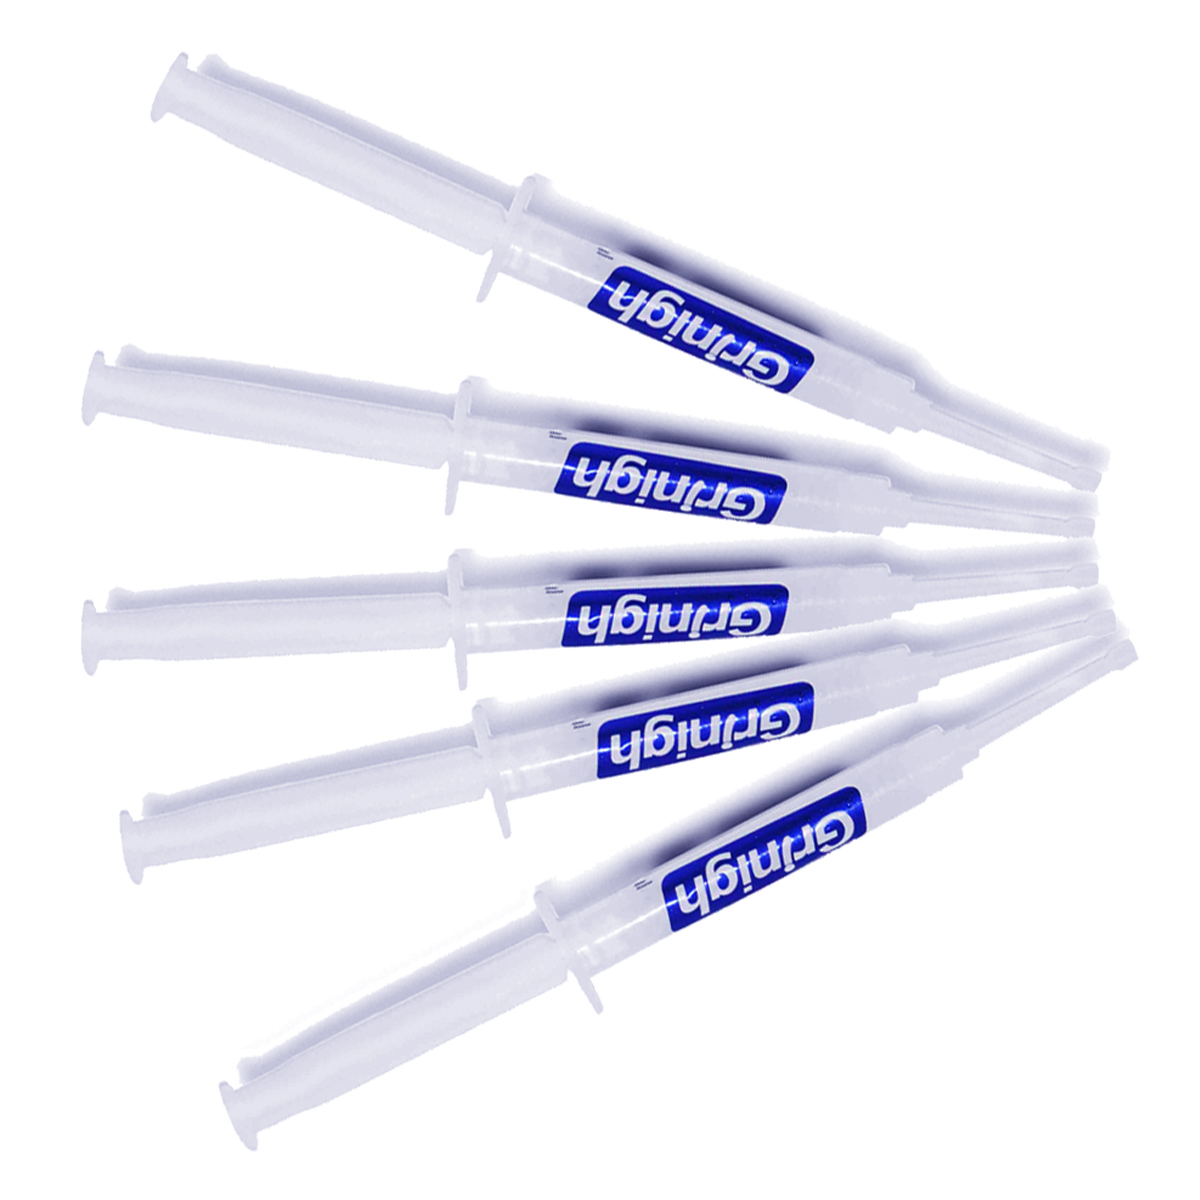 Grin365 3 ml Tandblegning Gel udskiftning sprøjter til Whitening System - Refill Kit med mere end 15 Behandlinger